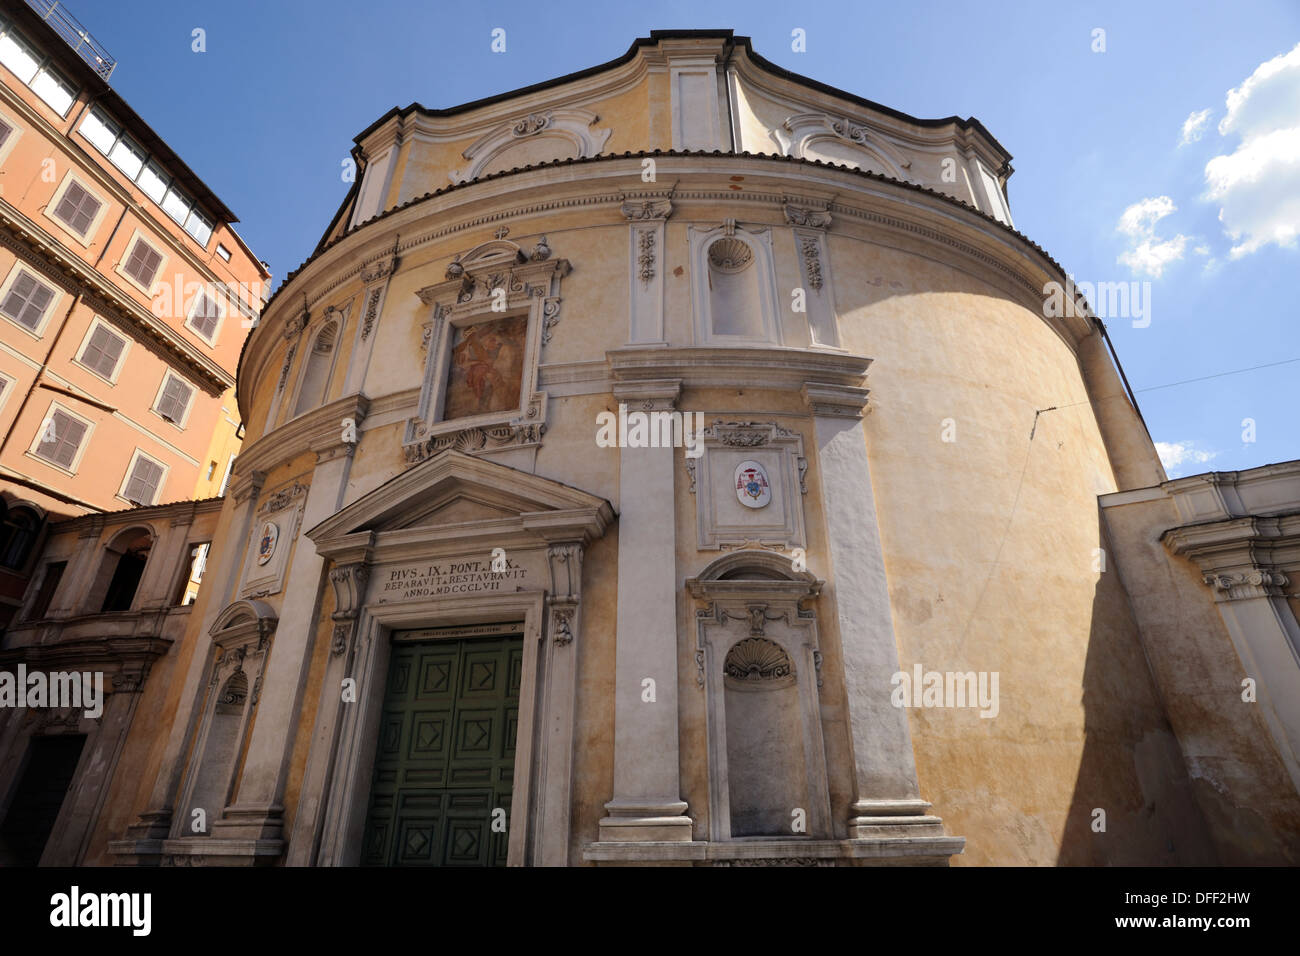 italy, rome, church of san bernardo alle terme Stock Photo